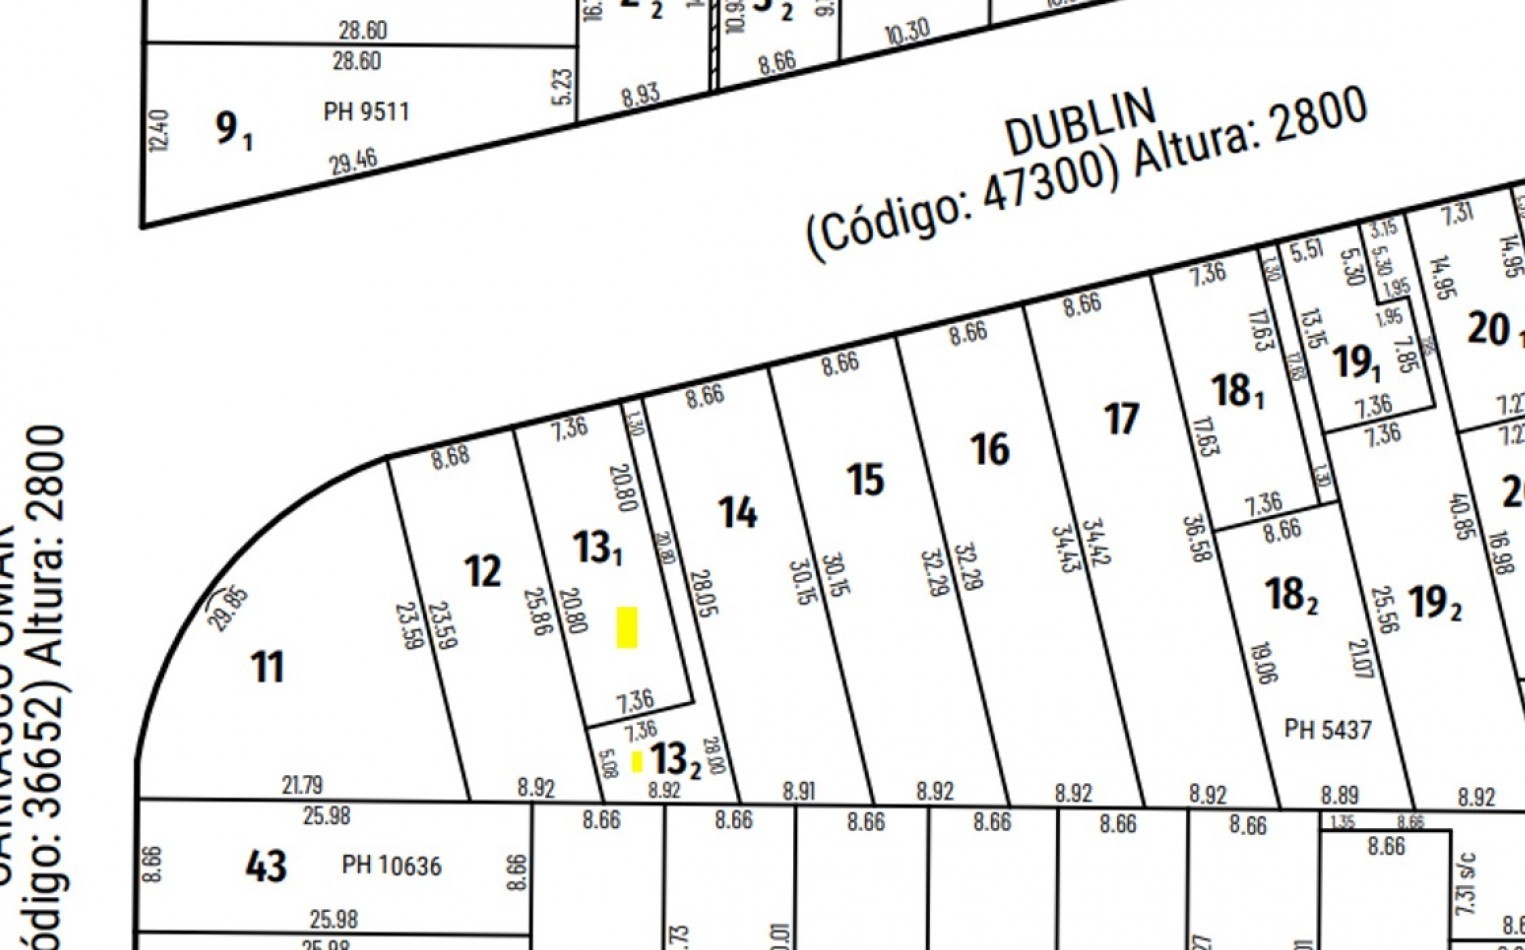 Dublin 2800, casa de 3 dormitorios, patio. posibilidad terreno independiente. 